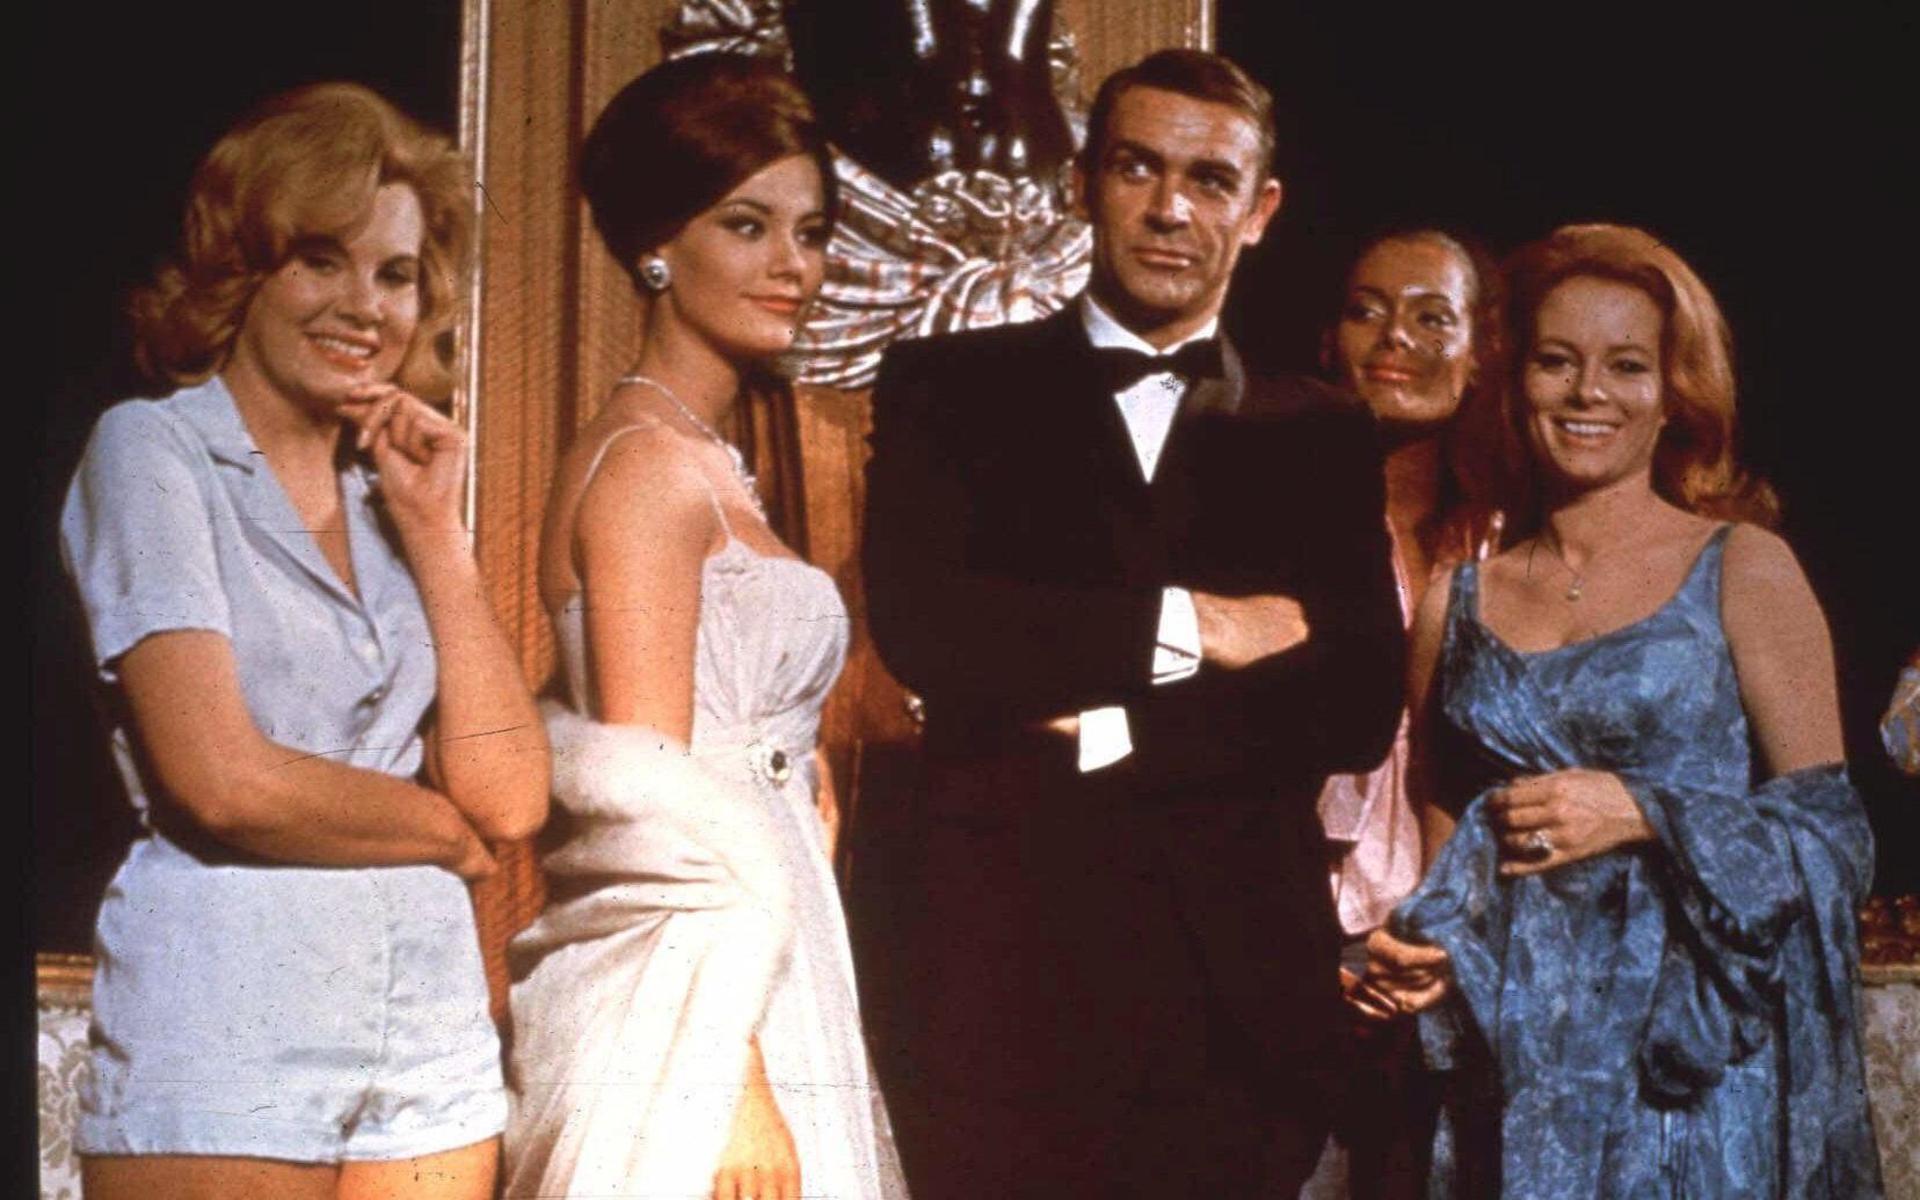 Sean Connery som James Bond i filmen ”Thunderball”. Många anser att han är den skådespelare som bäst tagit sig an rollen som Agent 007.